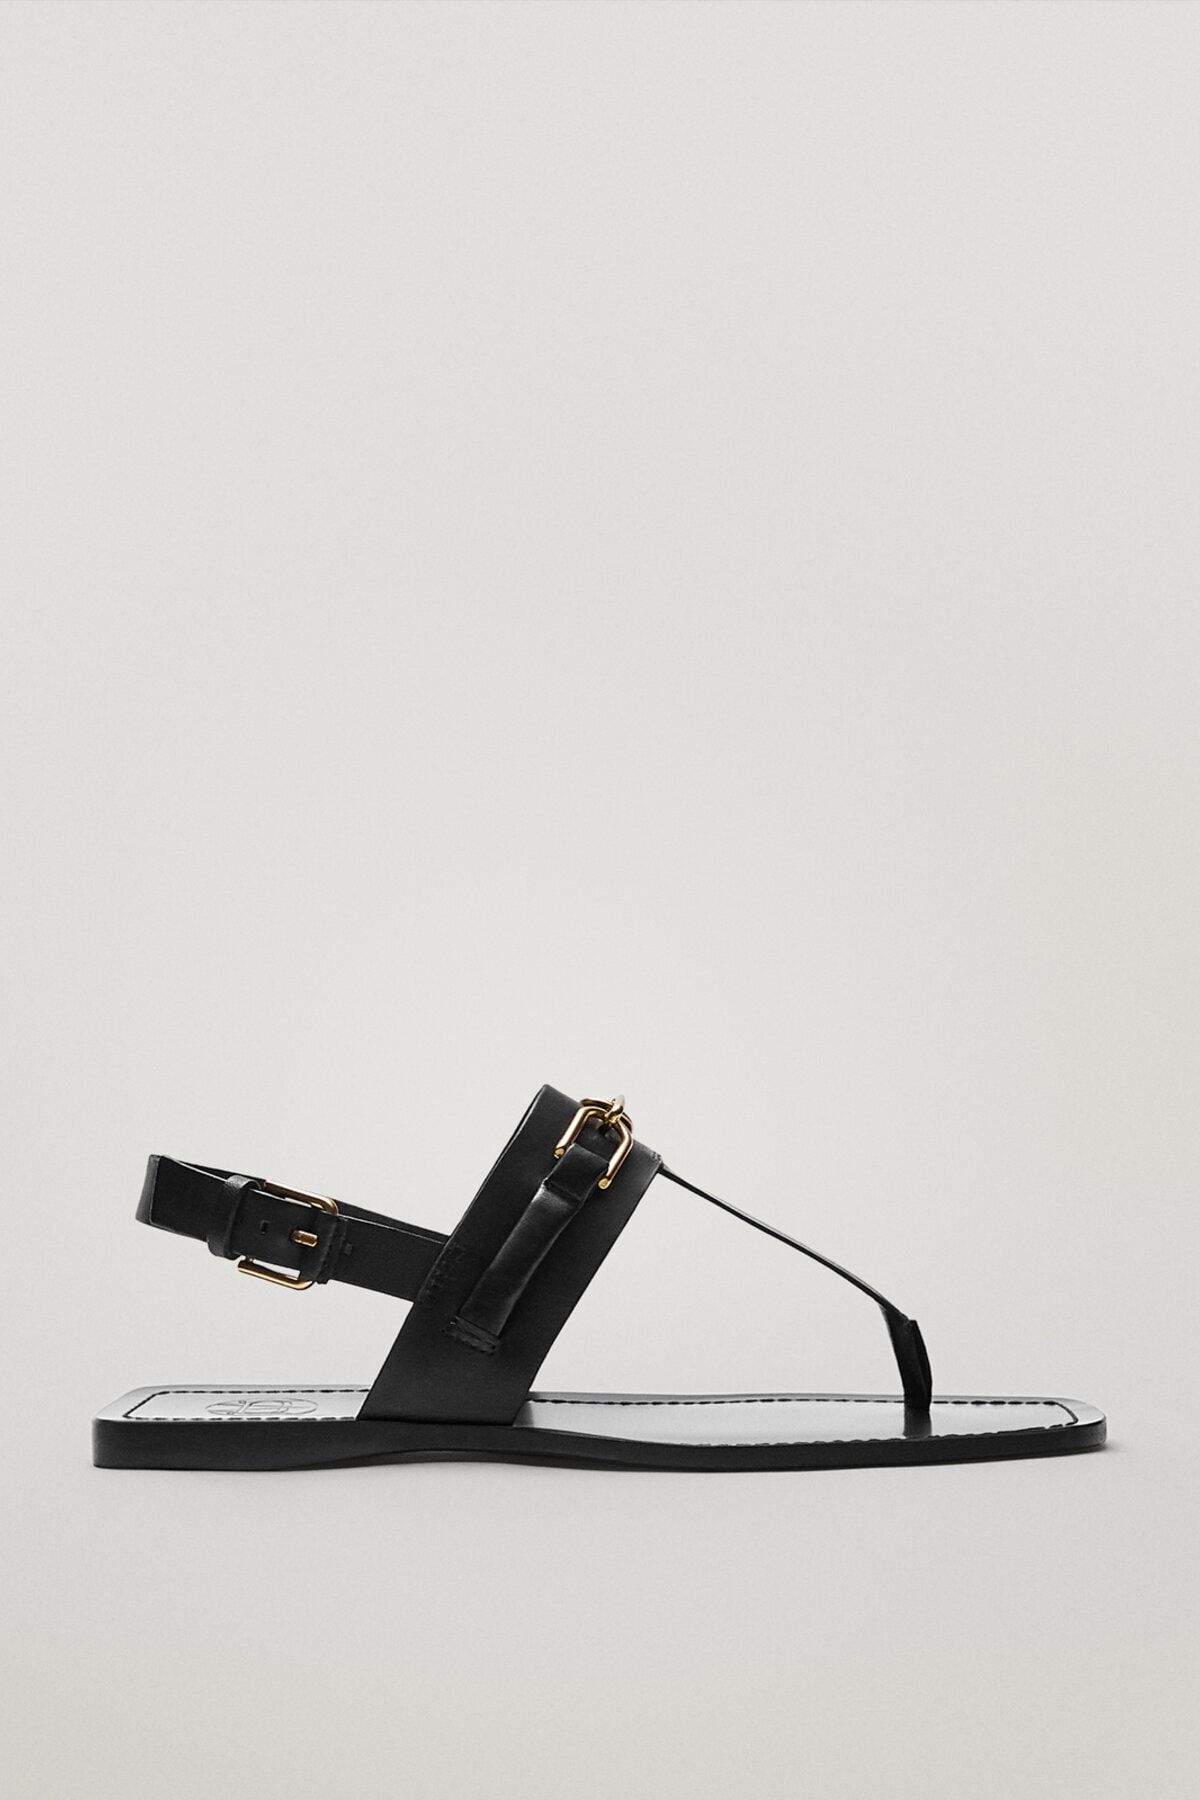 Massimo Dutti Kadın Tokalı Topuk Bantlı Sandalet 11750850